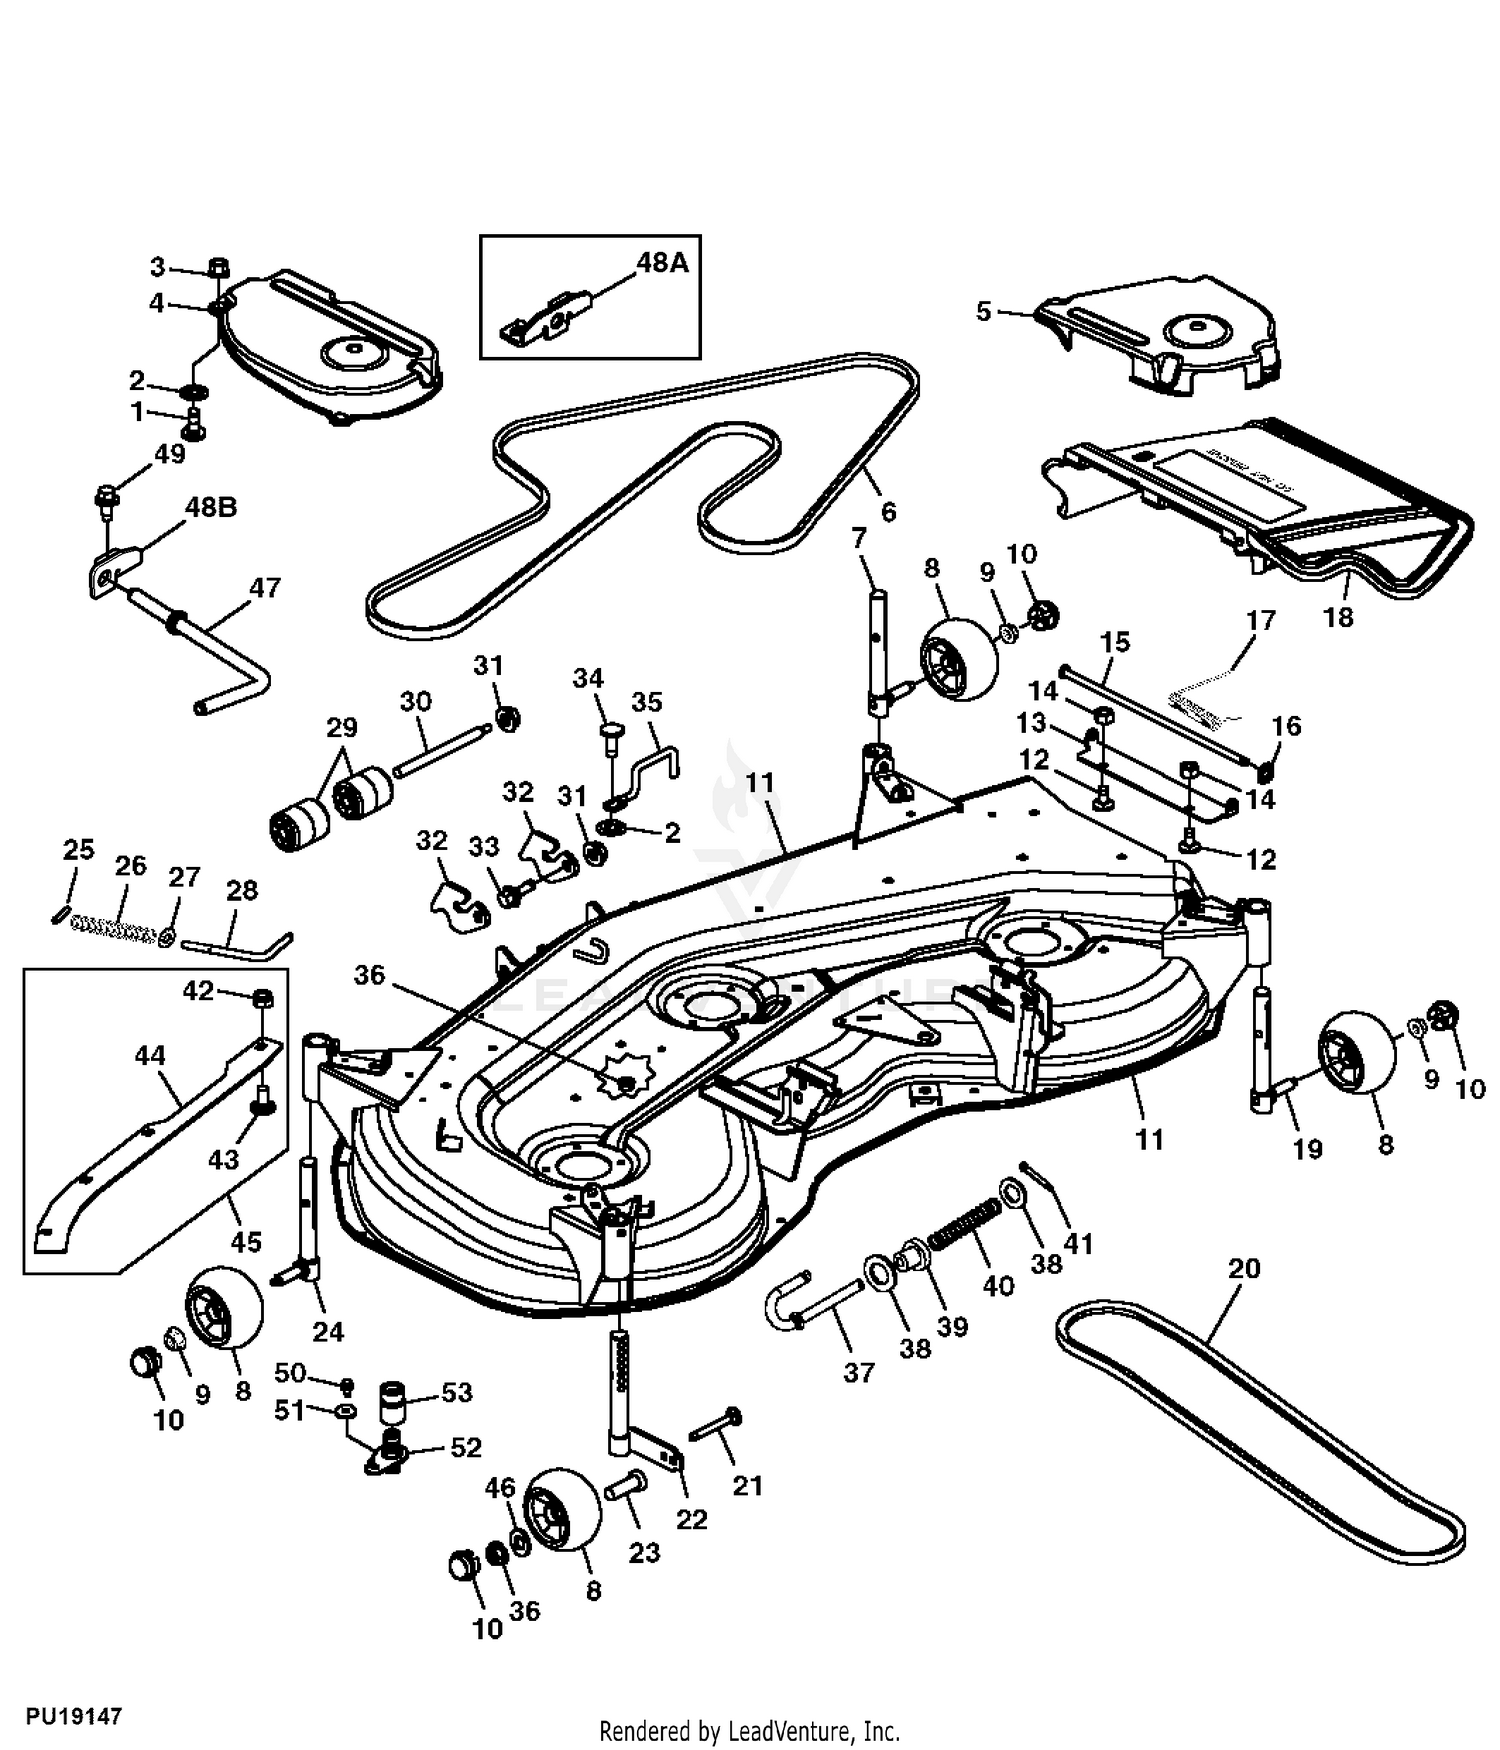 John Deere 48c Mower Deck Parts Diagram Wiring Diagram | Images and ...